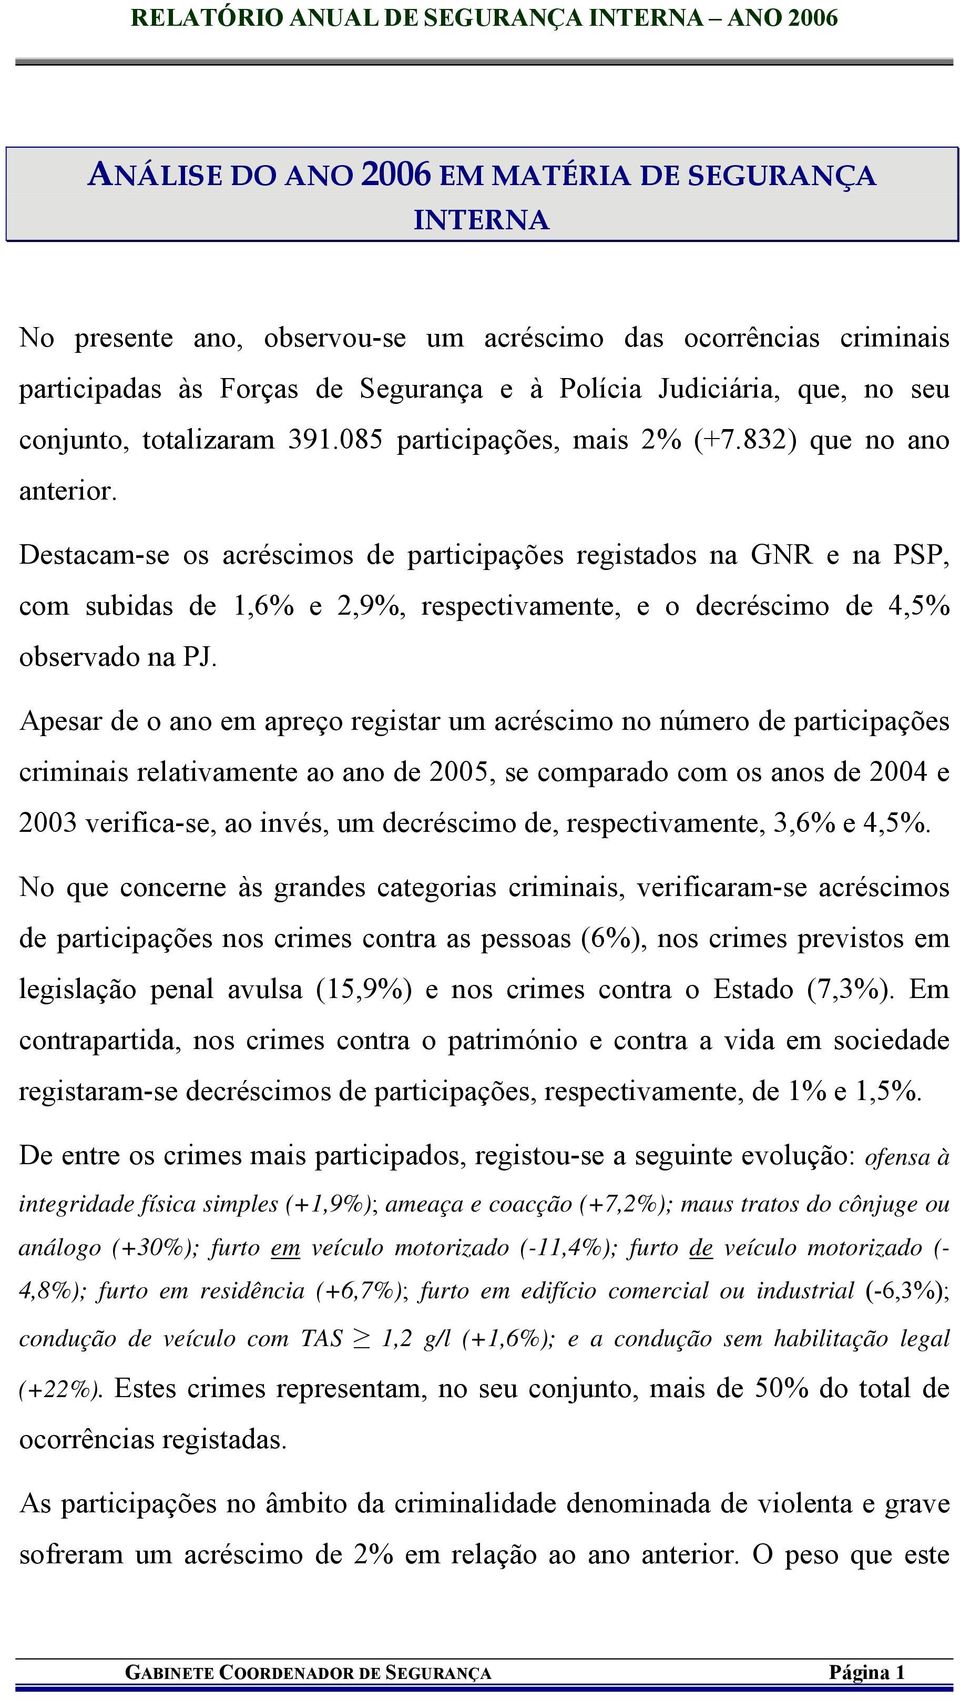 Destacam-se os acréscimos de participações registados na GNR e na PSP, com subidas de 1,6% e 2,9%, respectivamente, e o decréscimo de 4,5% observado na PJ.